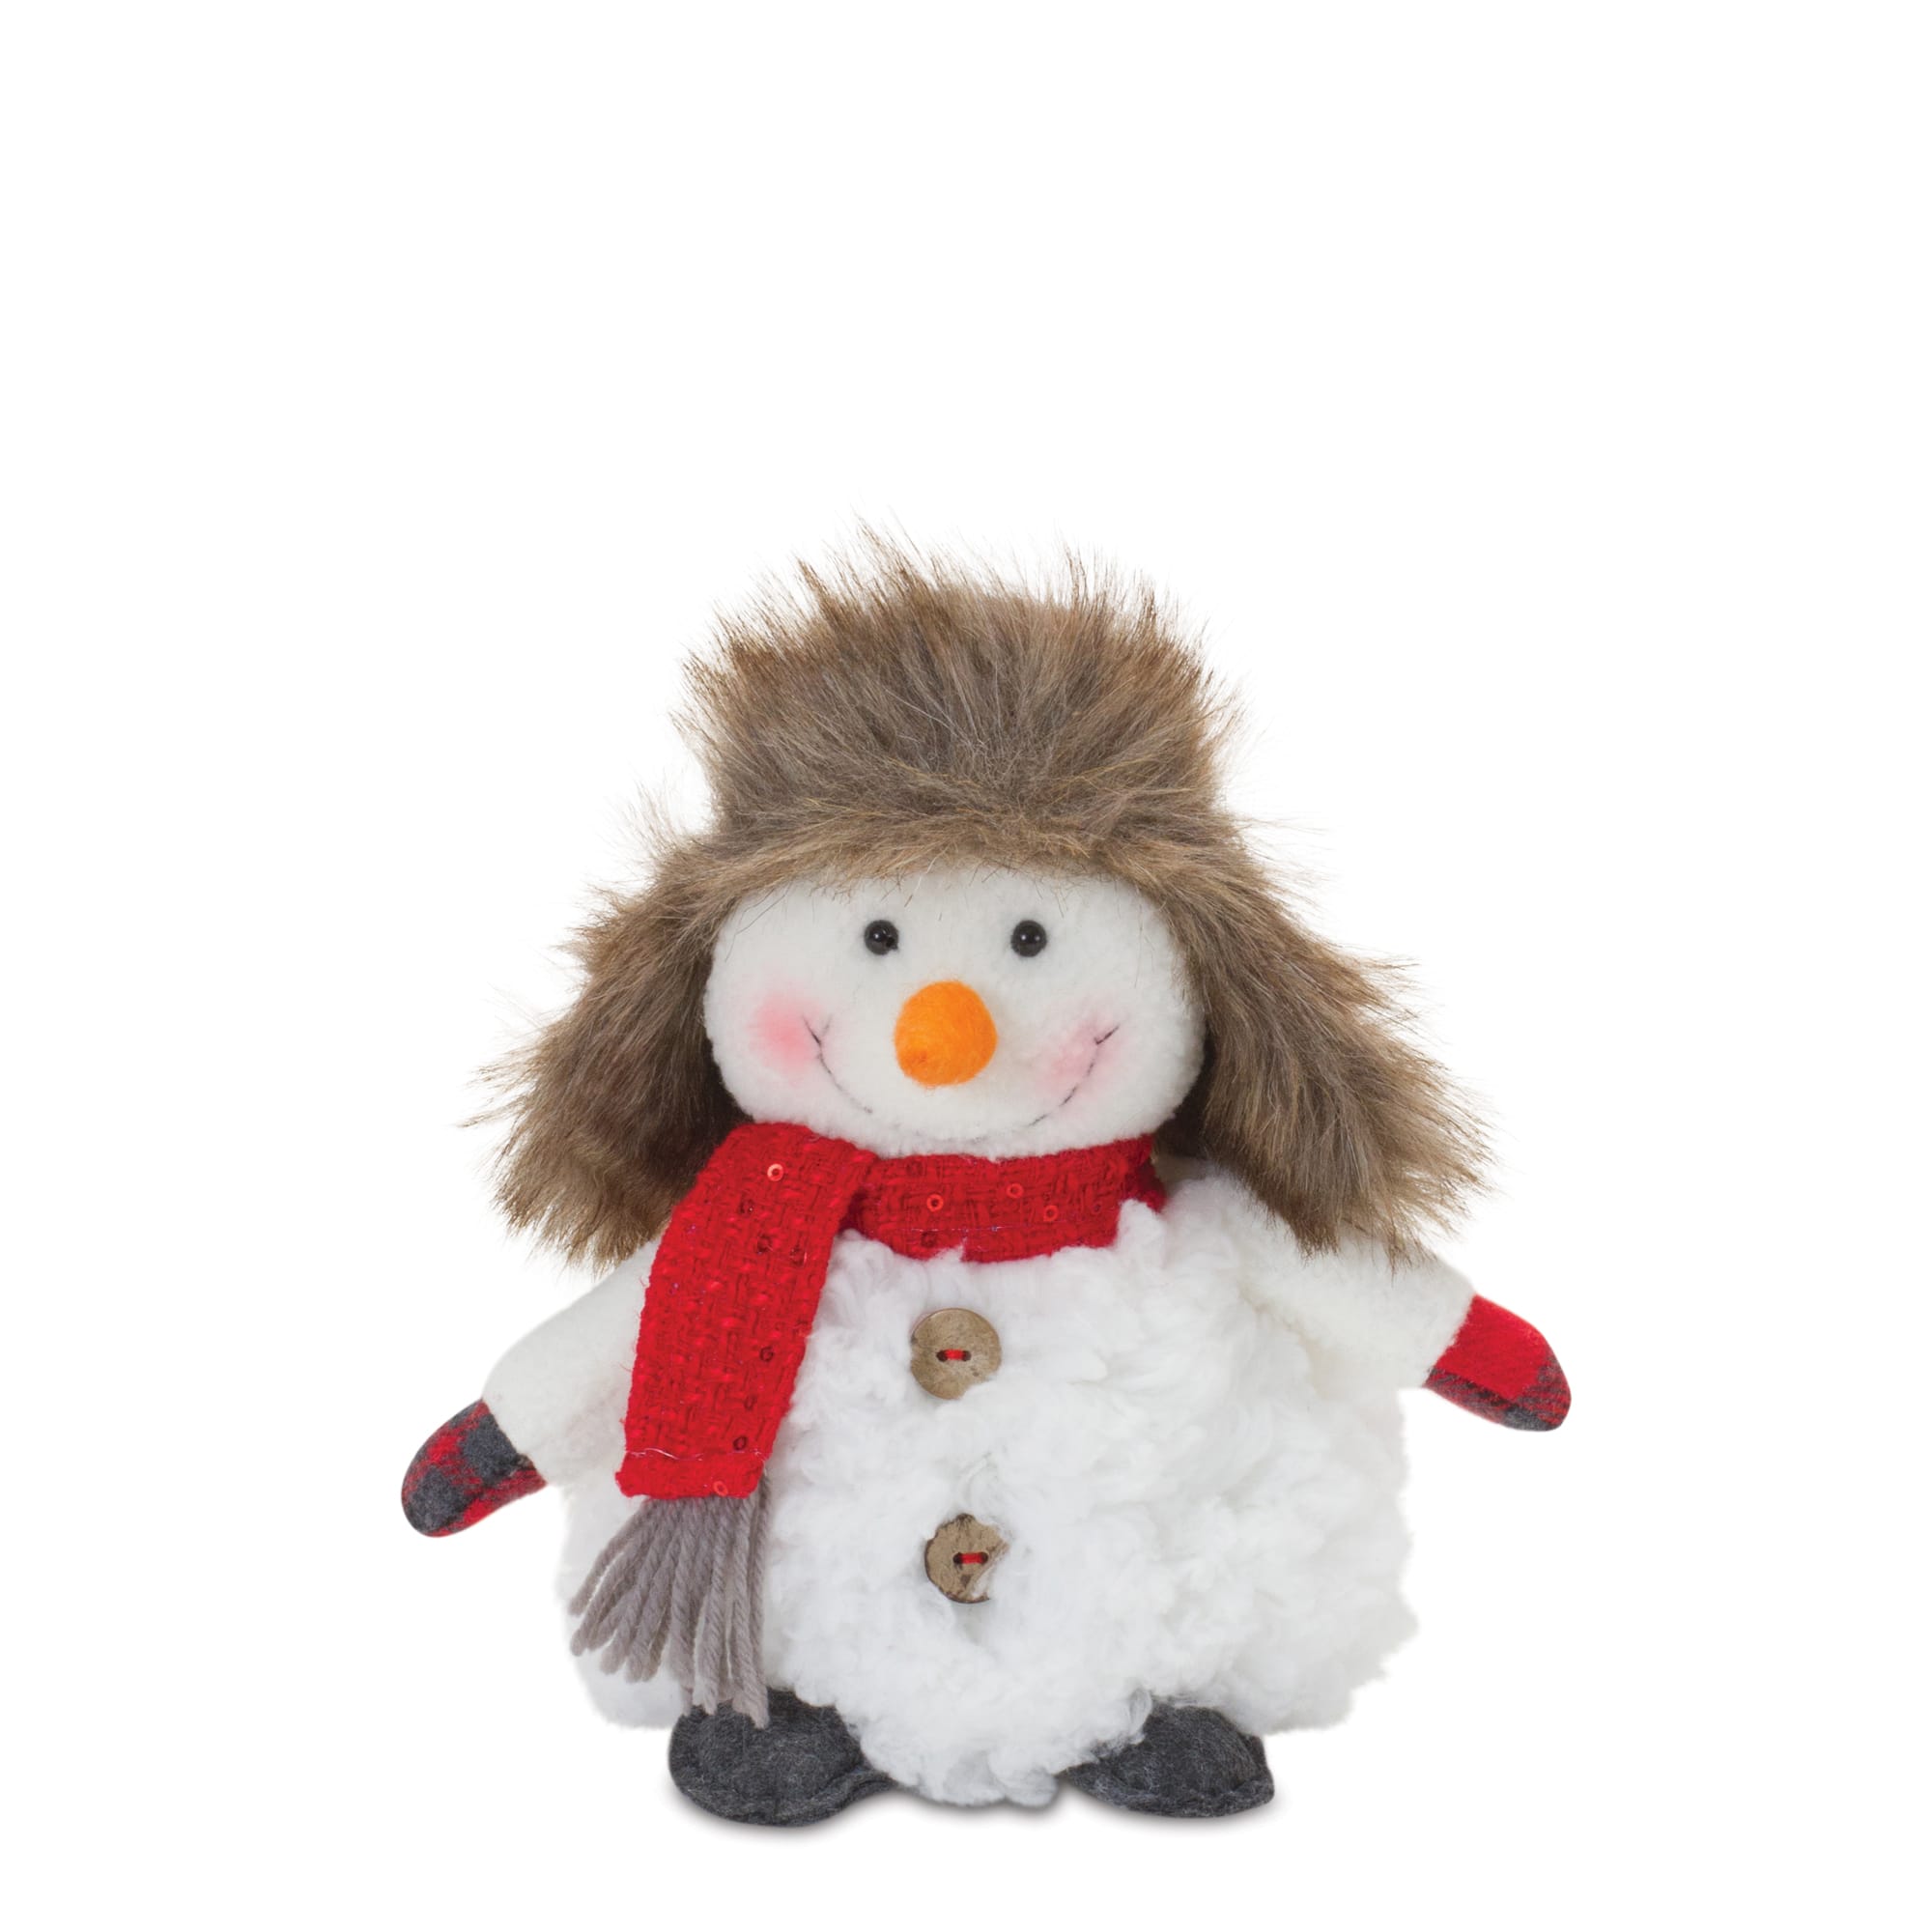 Plush Snowman with Hat &#x26; Scarf Set, 10.5&#x22; &#x26; 8&#x22;